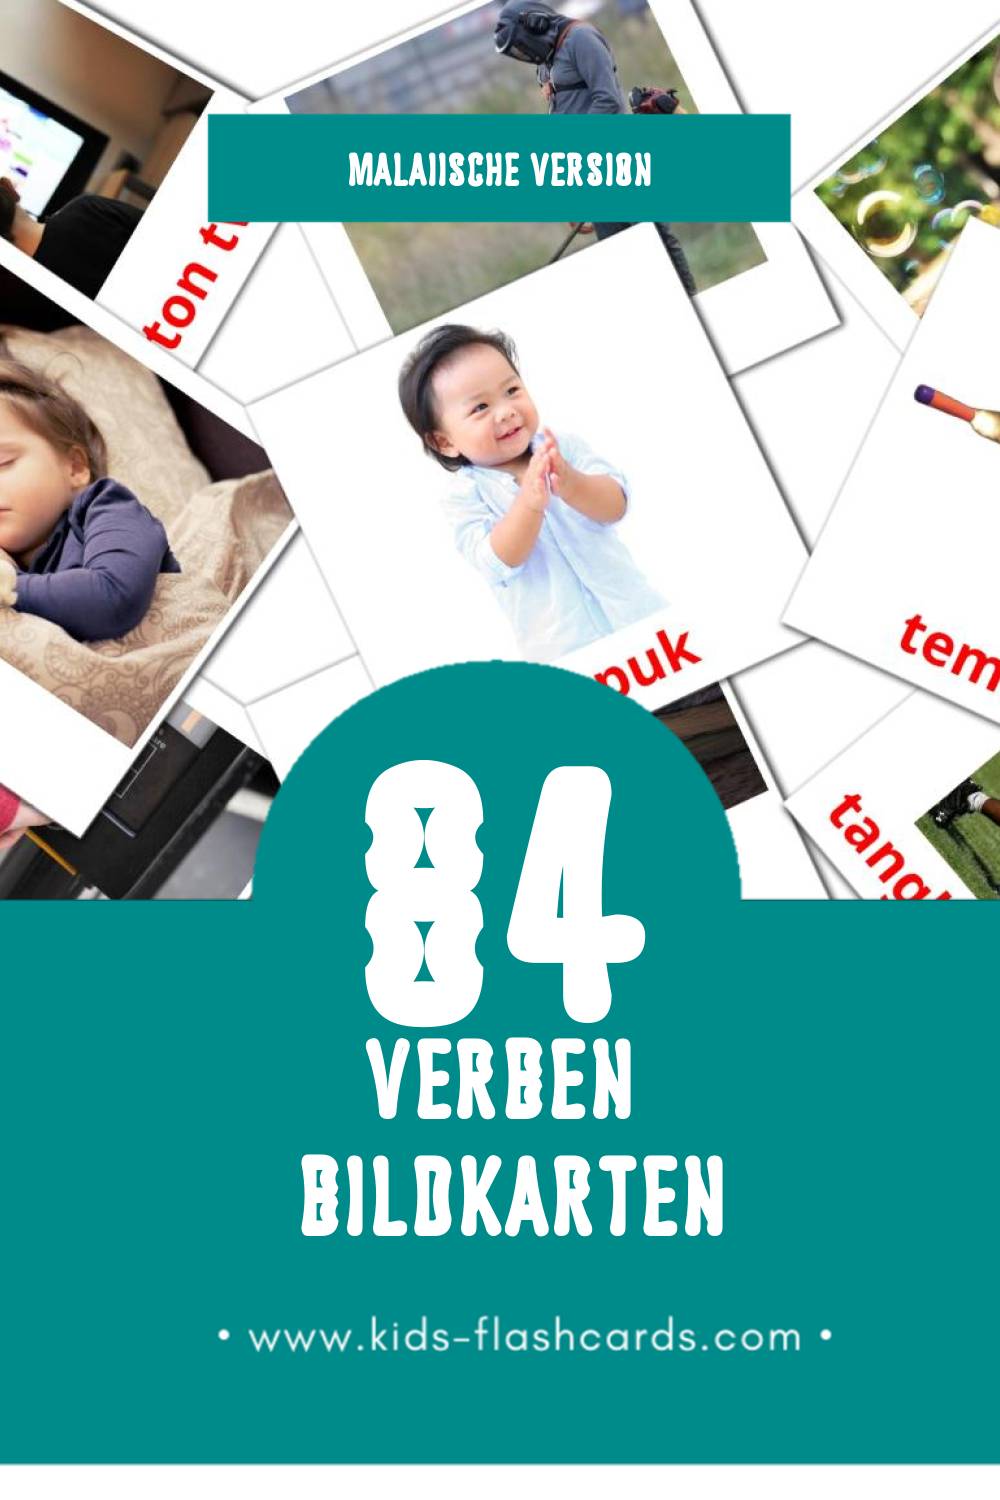 Visual PERBUATAN Flashcards für Kleinkinder (126 Karten in Malaiisch)